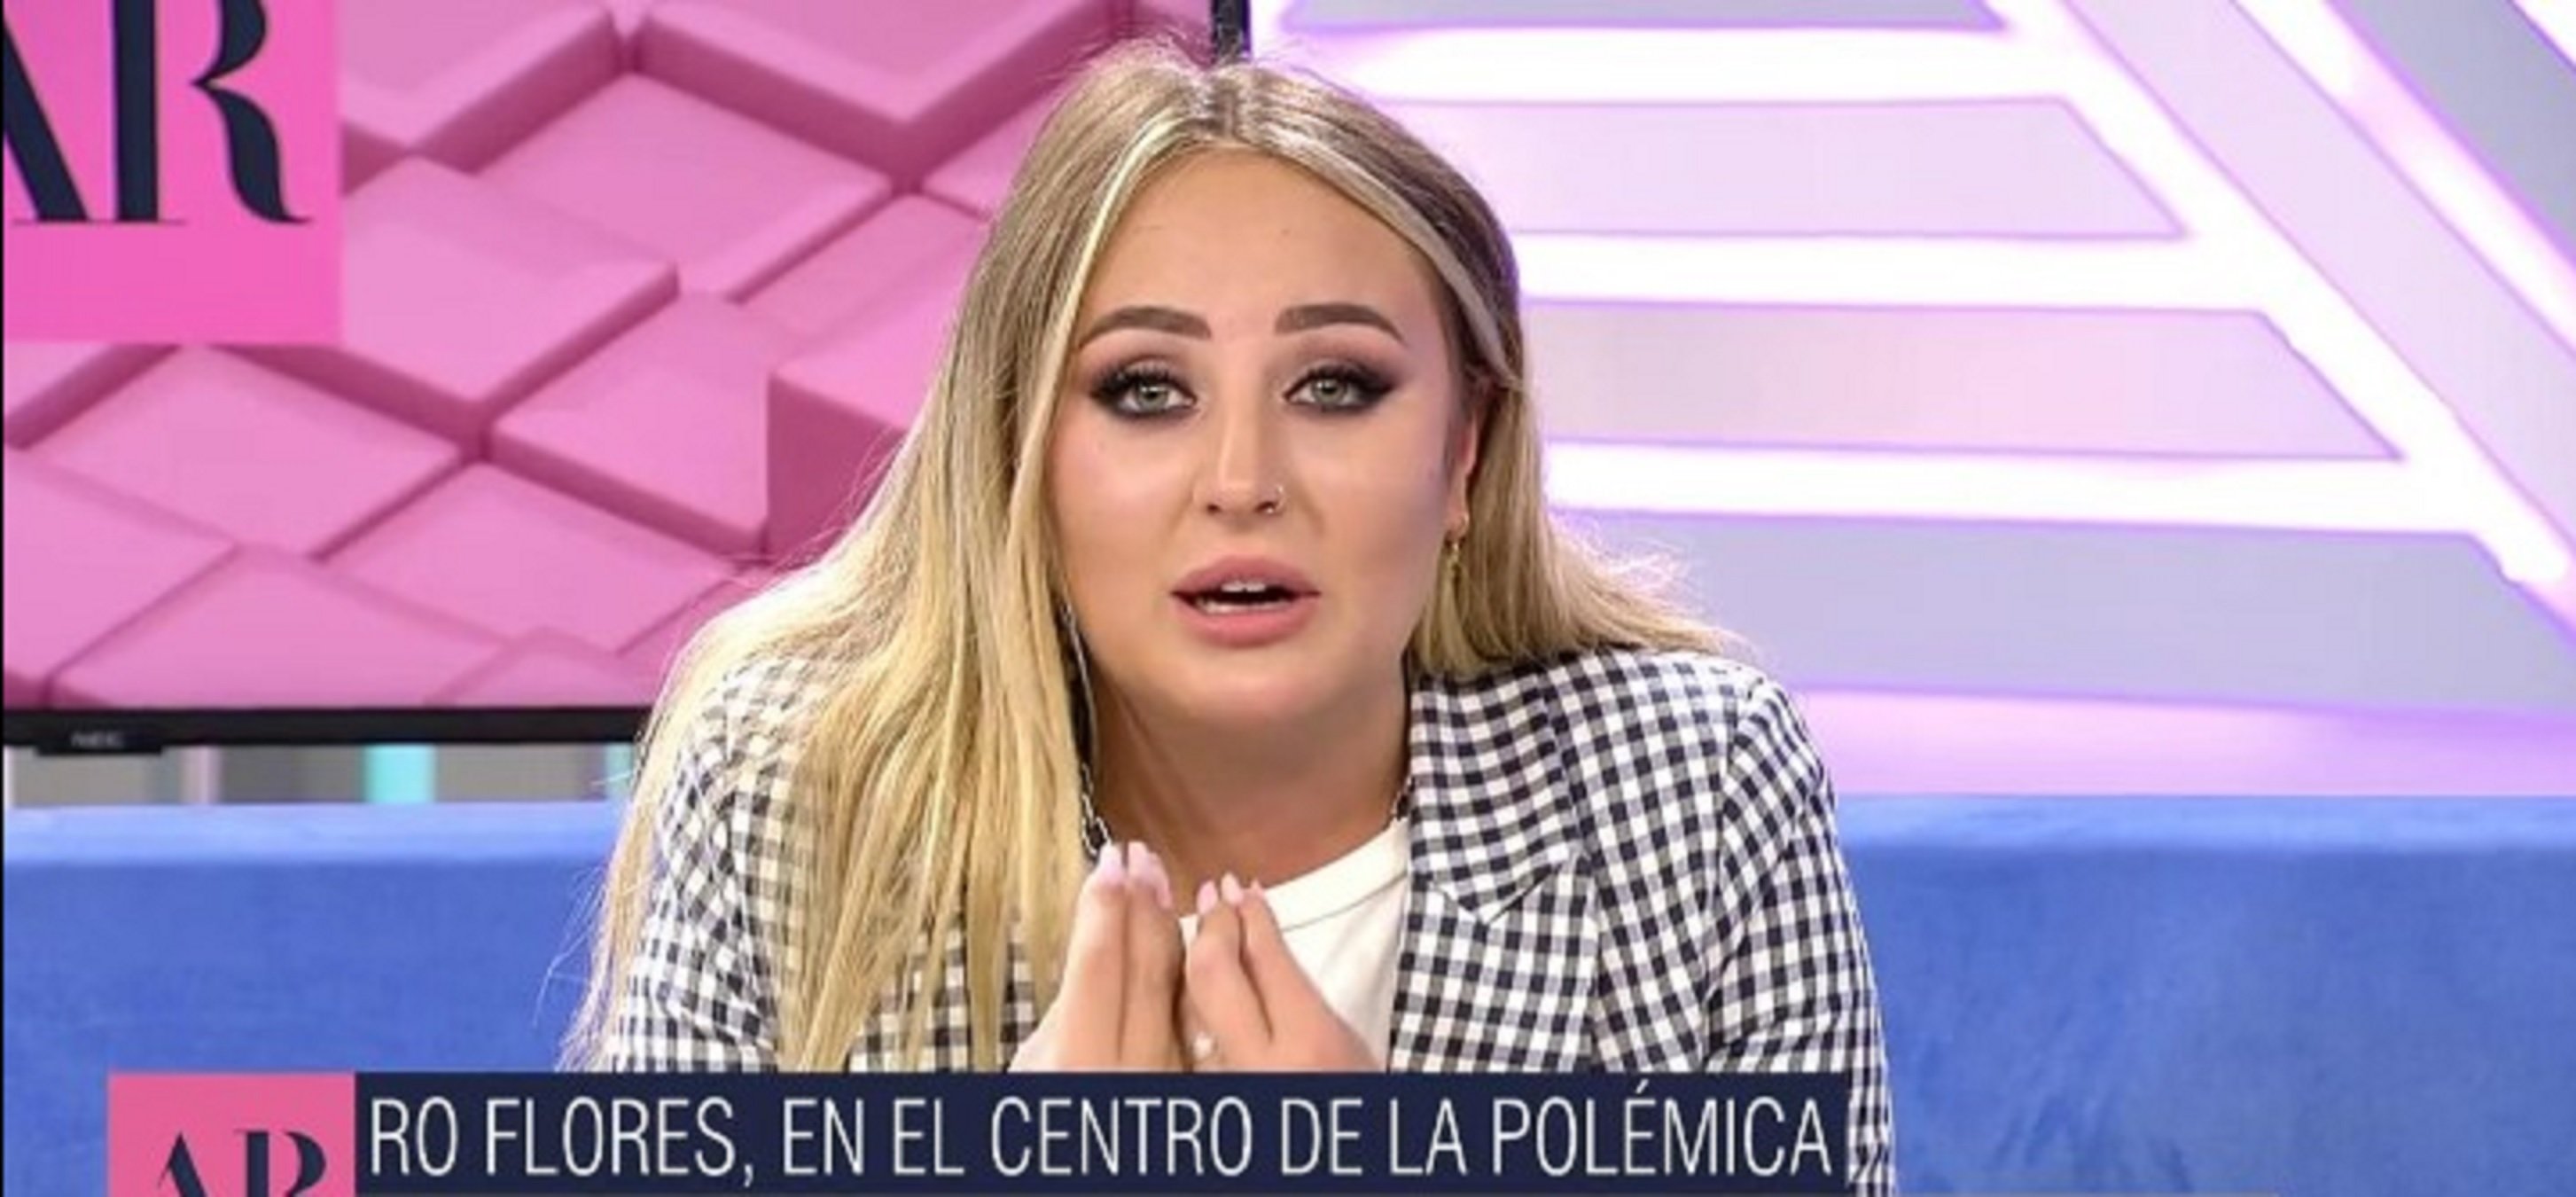 Rocío Flores explota en directo: "Mamá, ayer té llamé 2 veces, coge el teléfono"